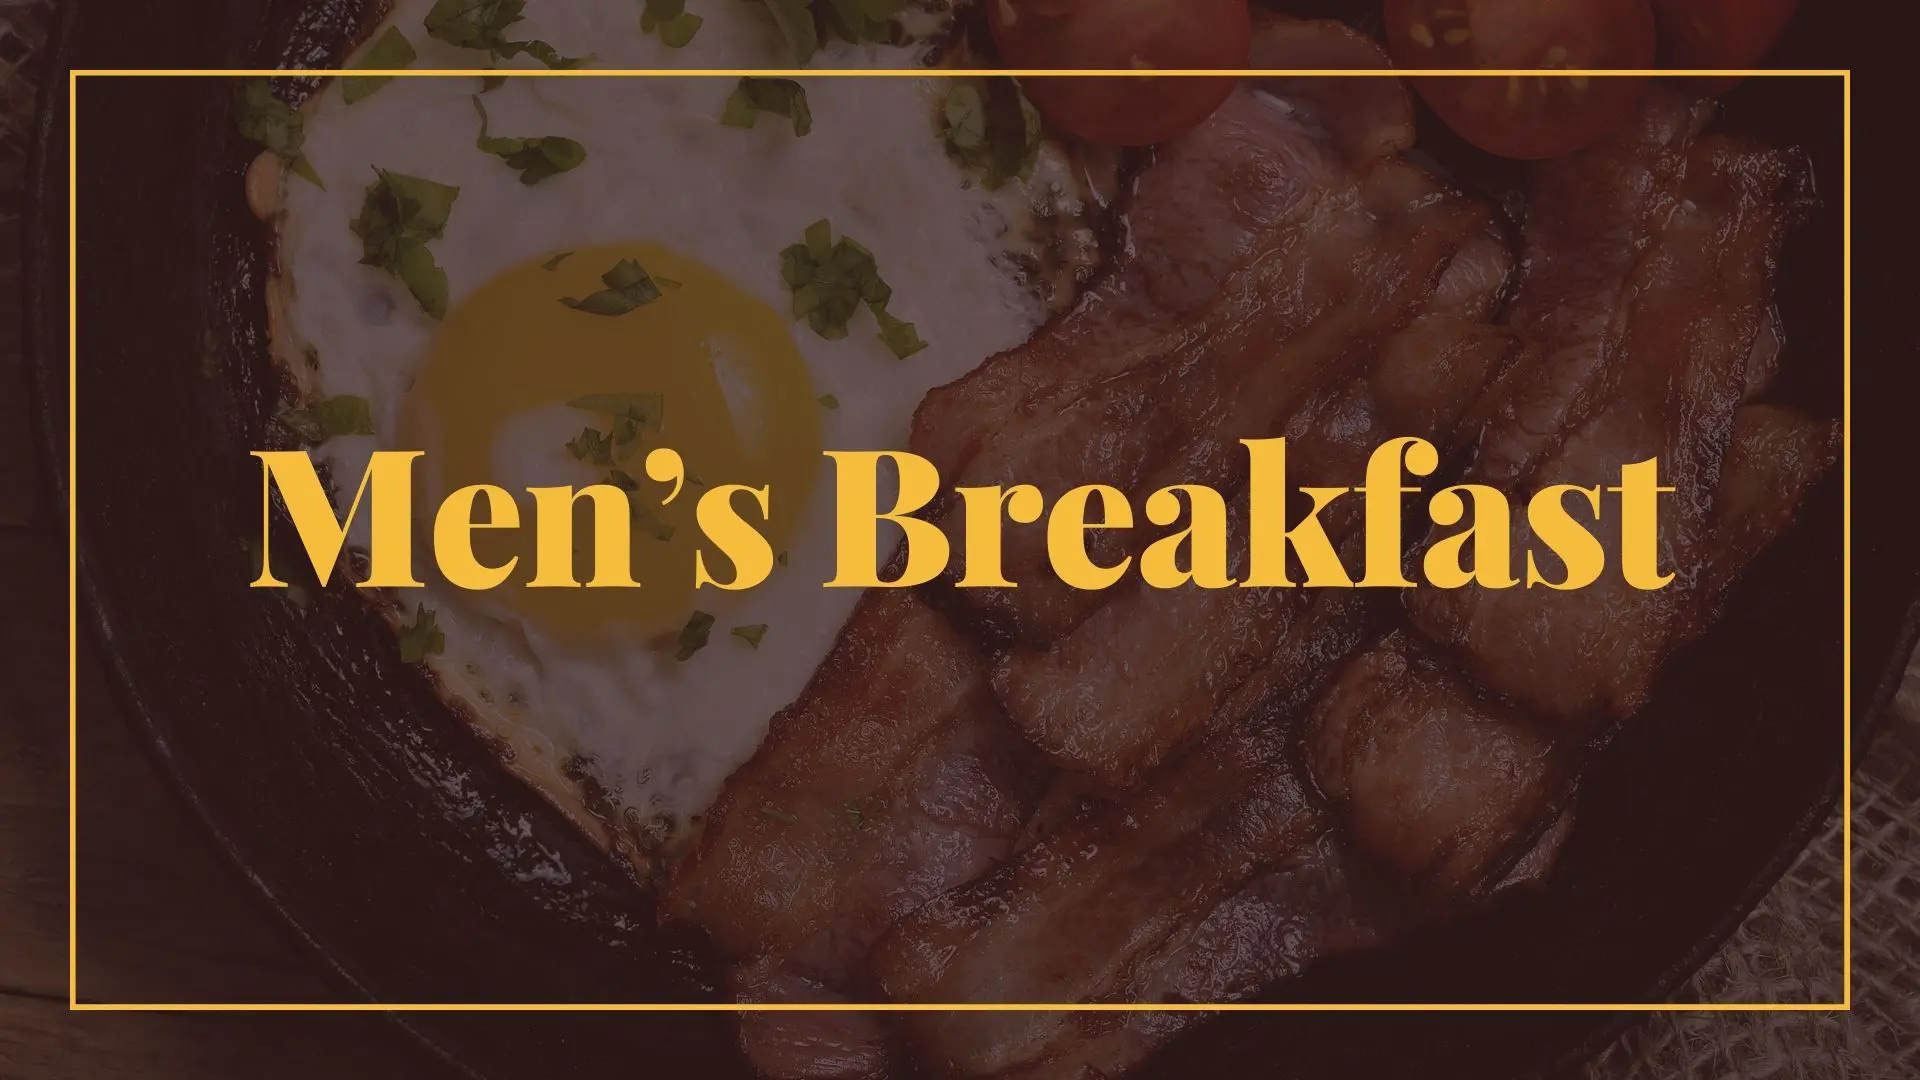 Click Here to Register for Men's Breakfast